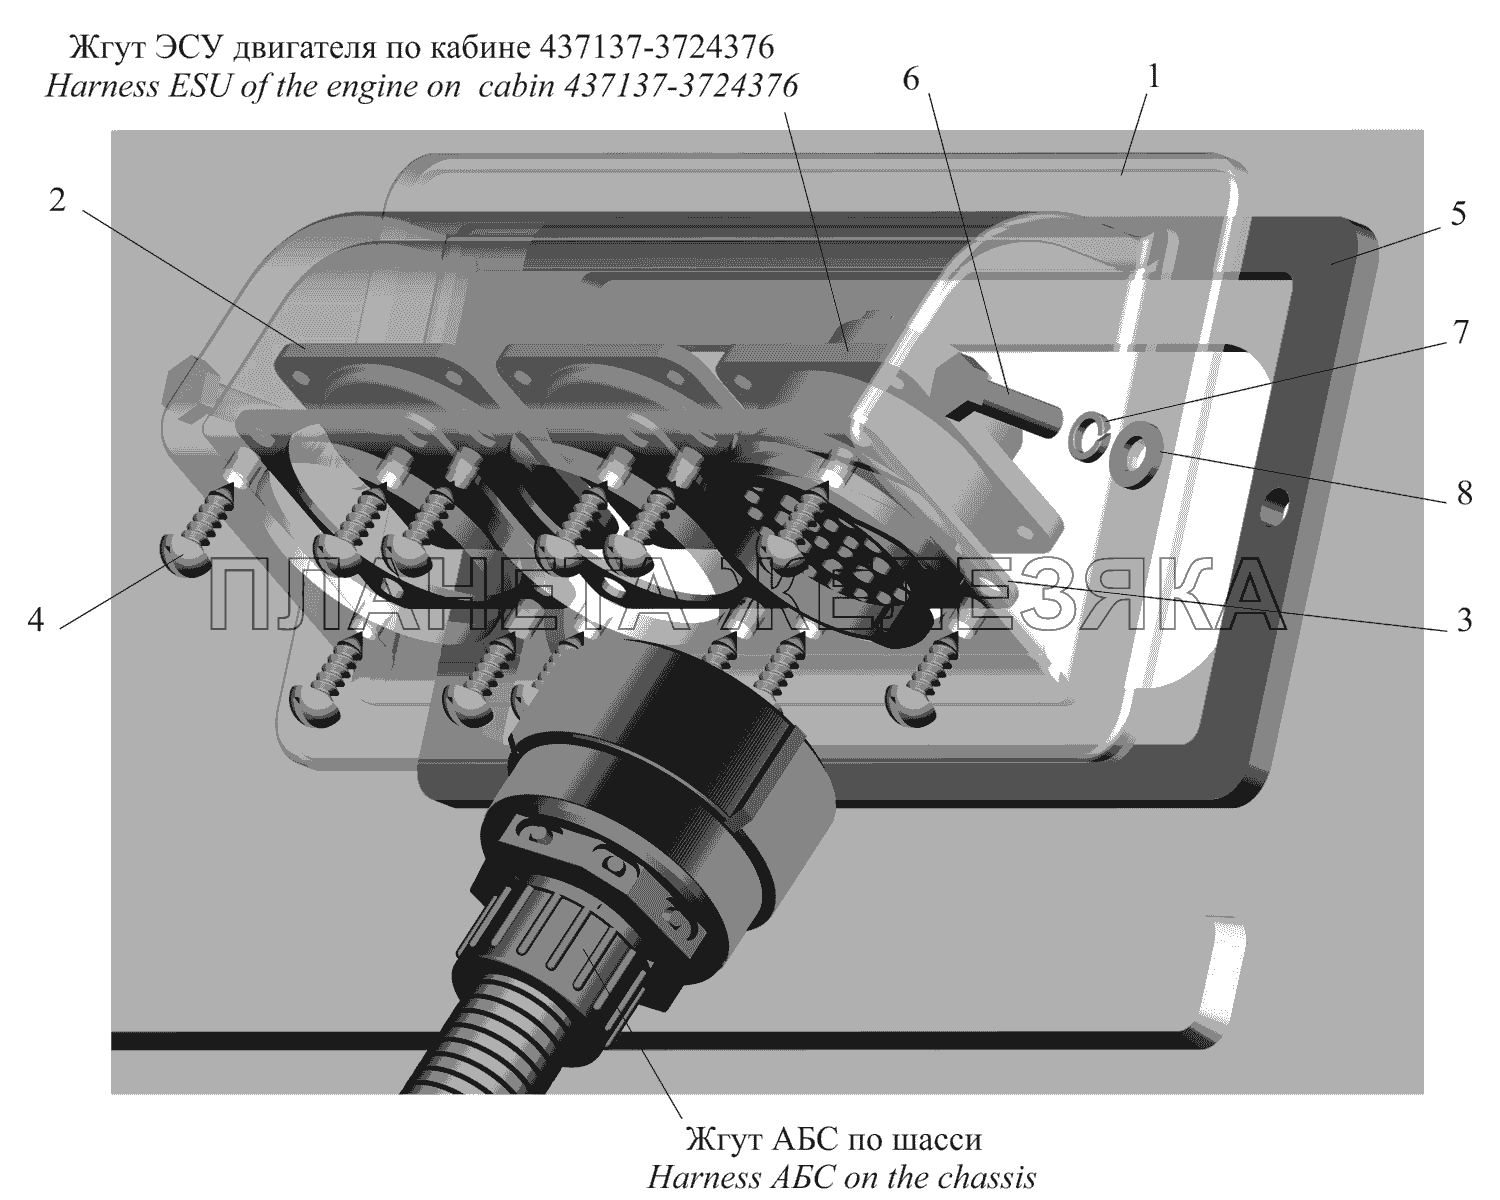 Ввод жгута ЭСУ двигателя в кабину МАЗ-437130 (Зубренок)